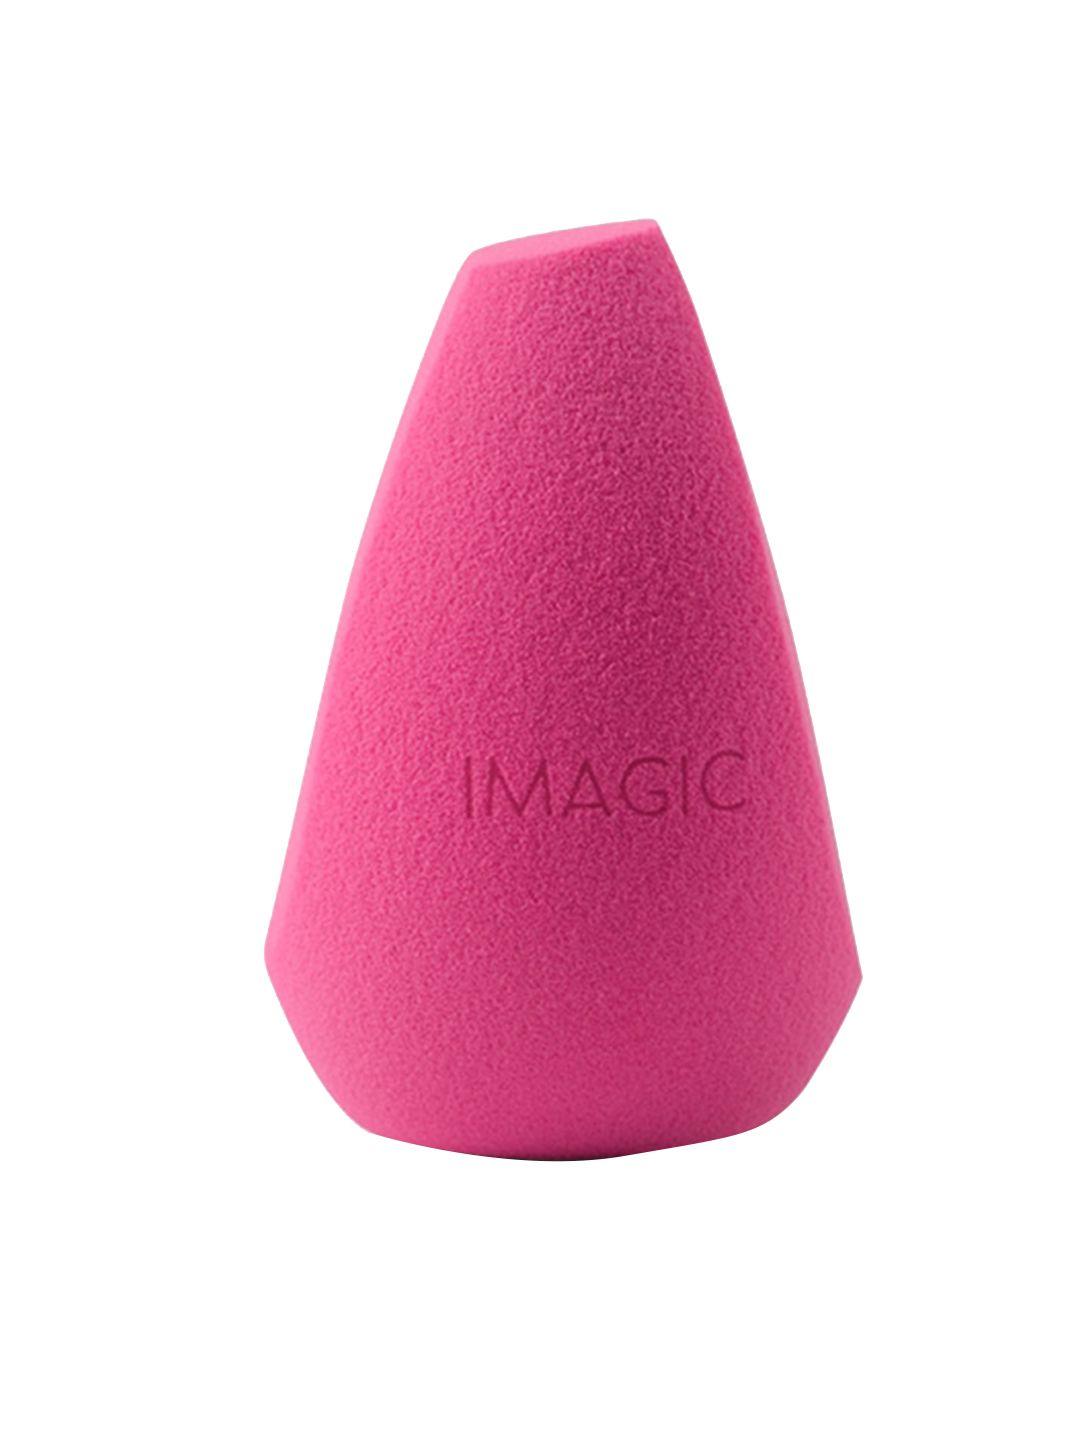 imagic professional cosmetics tl435-17 non latex makeup sponge - pink